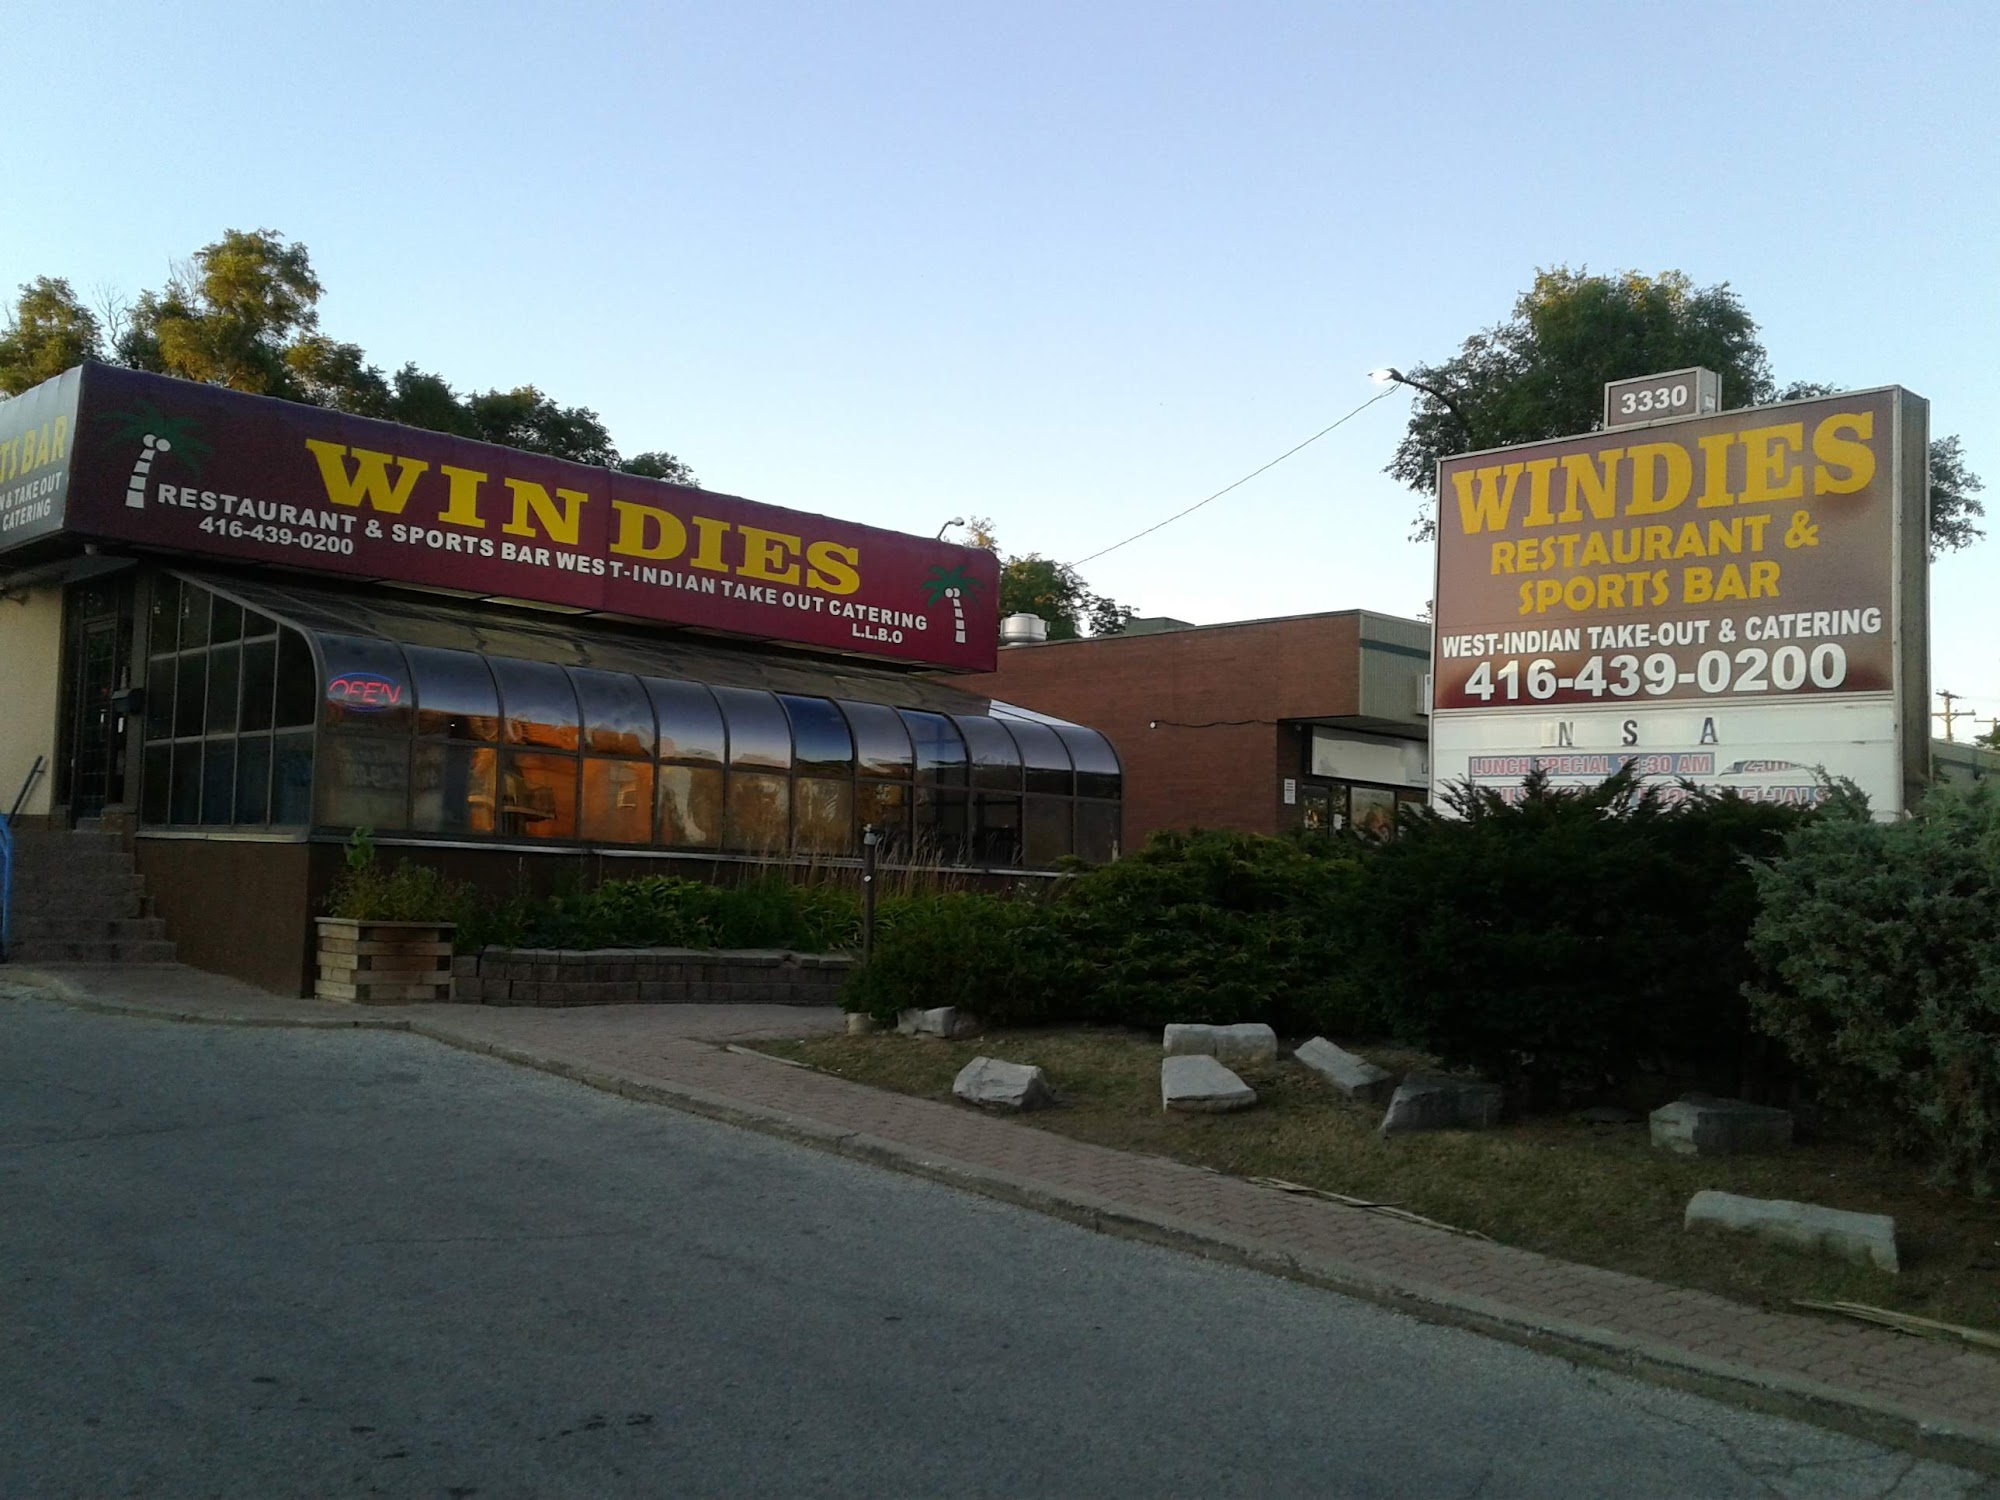 Windies Restaurant & Sports Bar